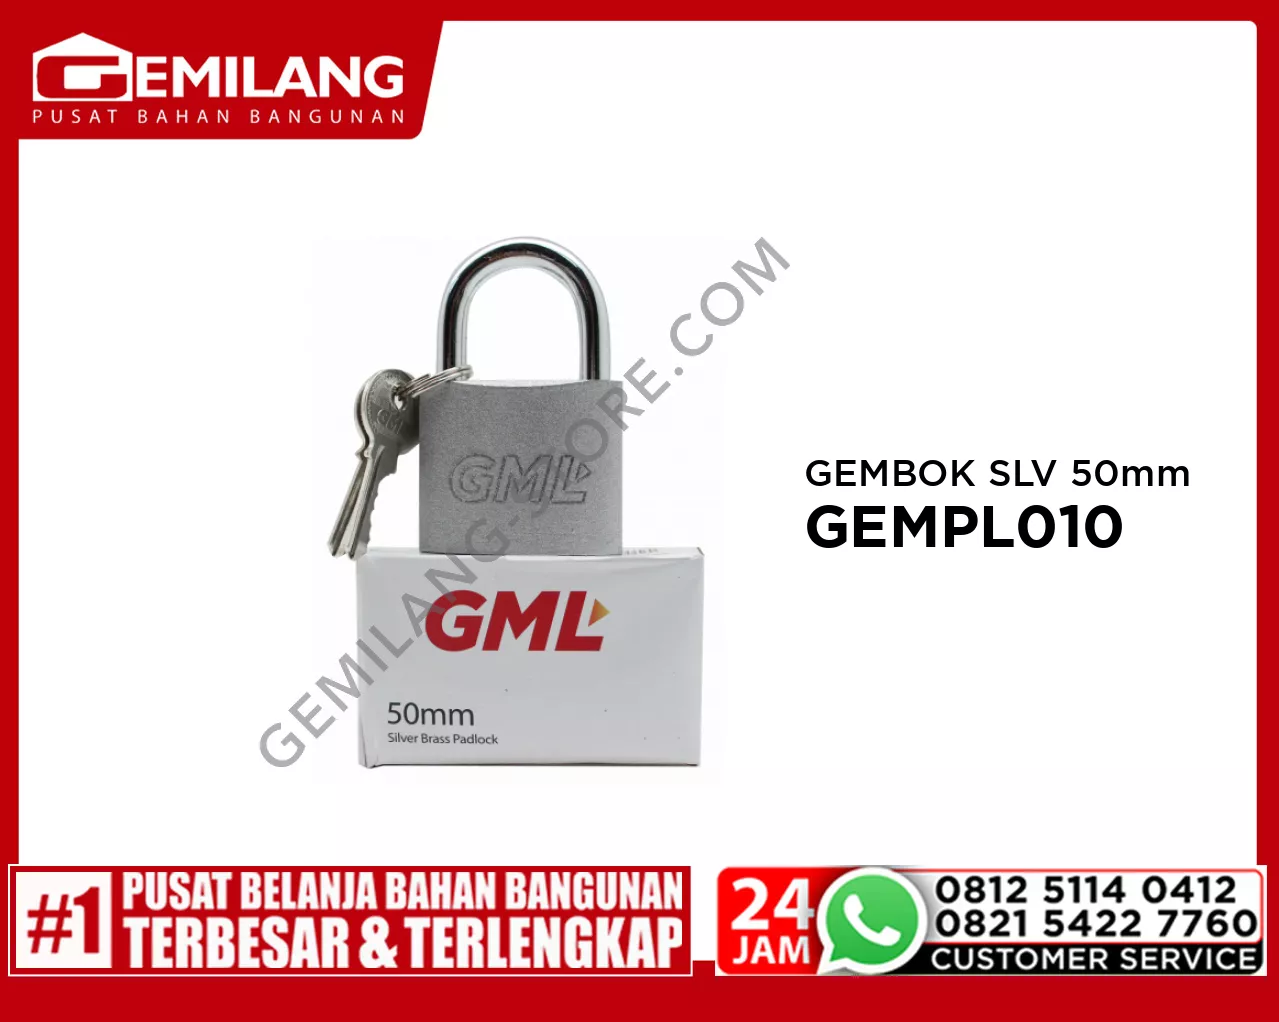 GML GEMBOK SILVER 50mm GEMPL010